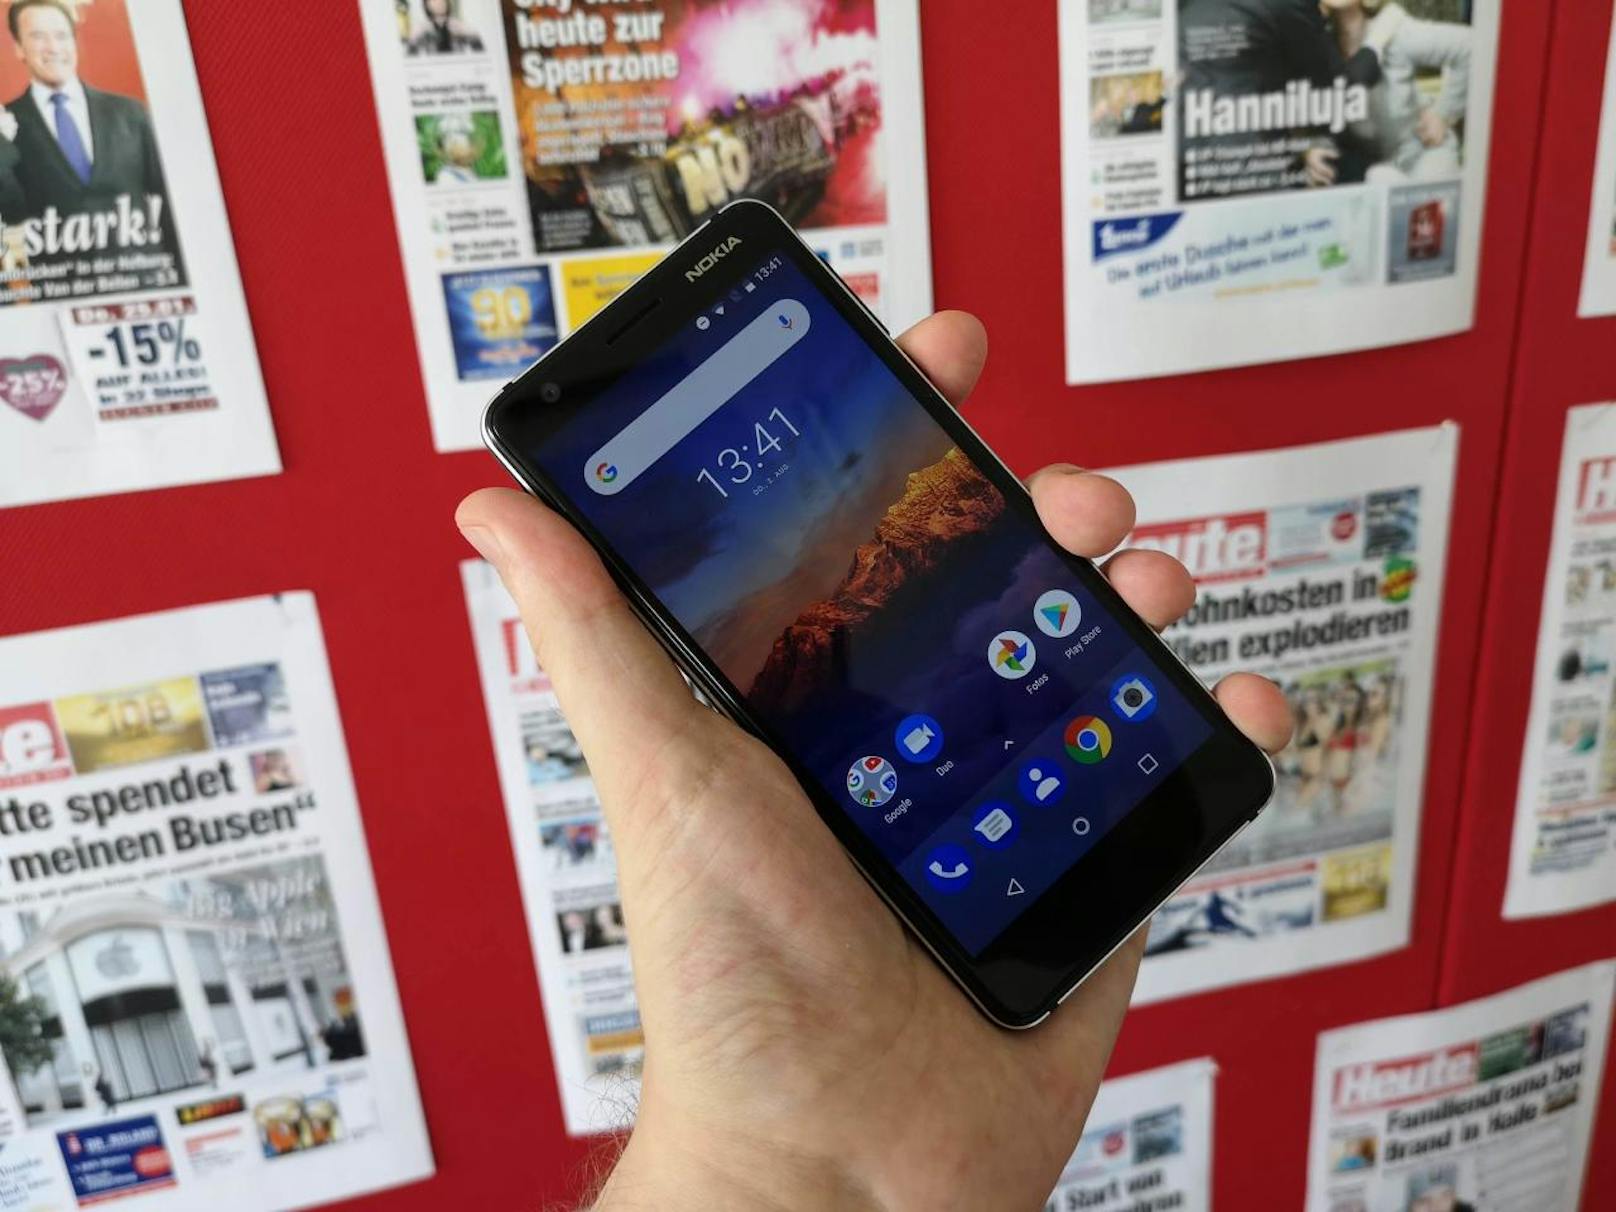 Für 159 Euro liefert HMD Global einen Android-Einsteiger ab, der bei der Kamera überrascht. Daneben gibt es aber typische Einsteiger-Ausstattung. Das neue Nokia 3.1 gibt es in den drei Farbkombis Blau-Kupfer, Schwarz-Chrom und Weiß-Silber.